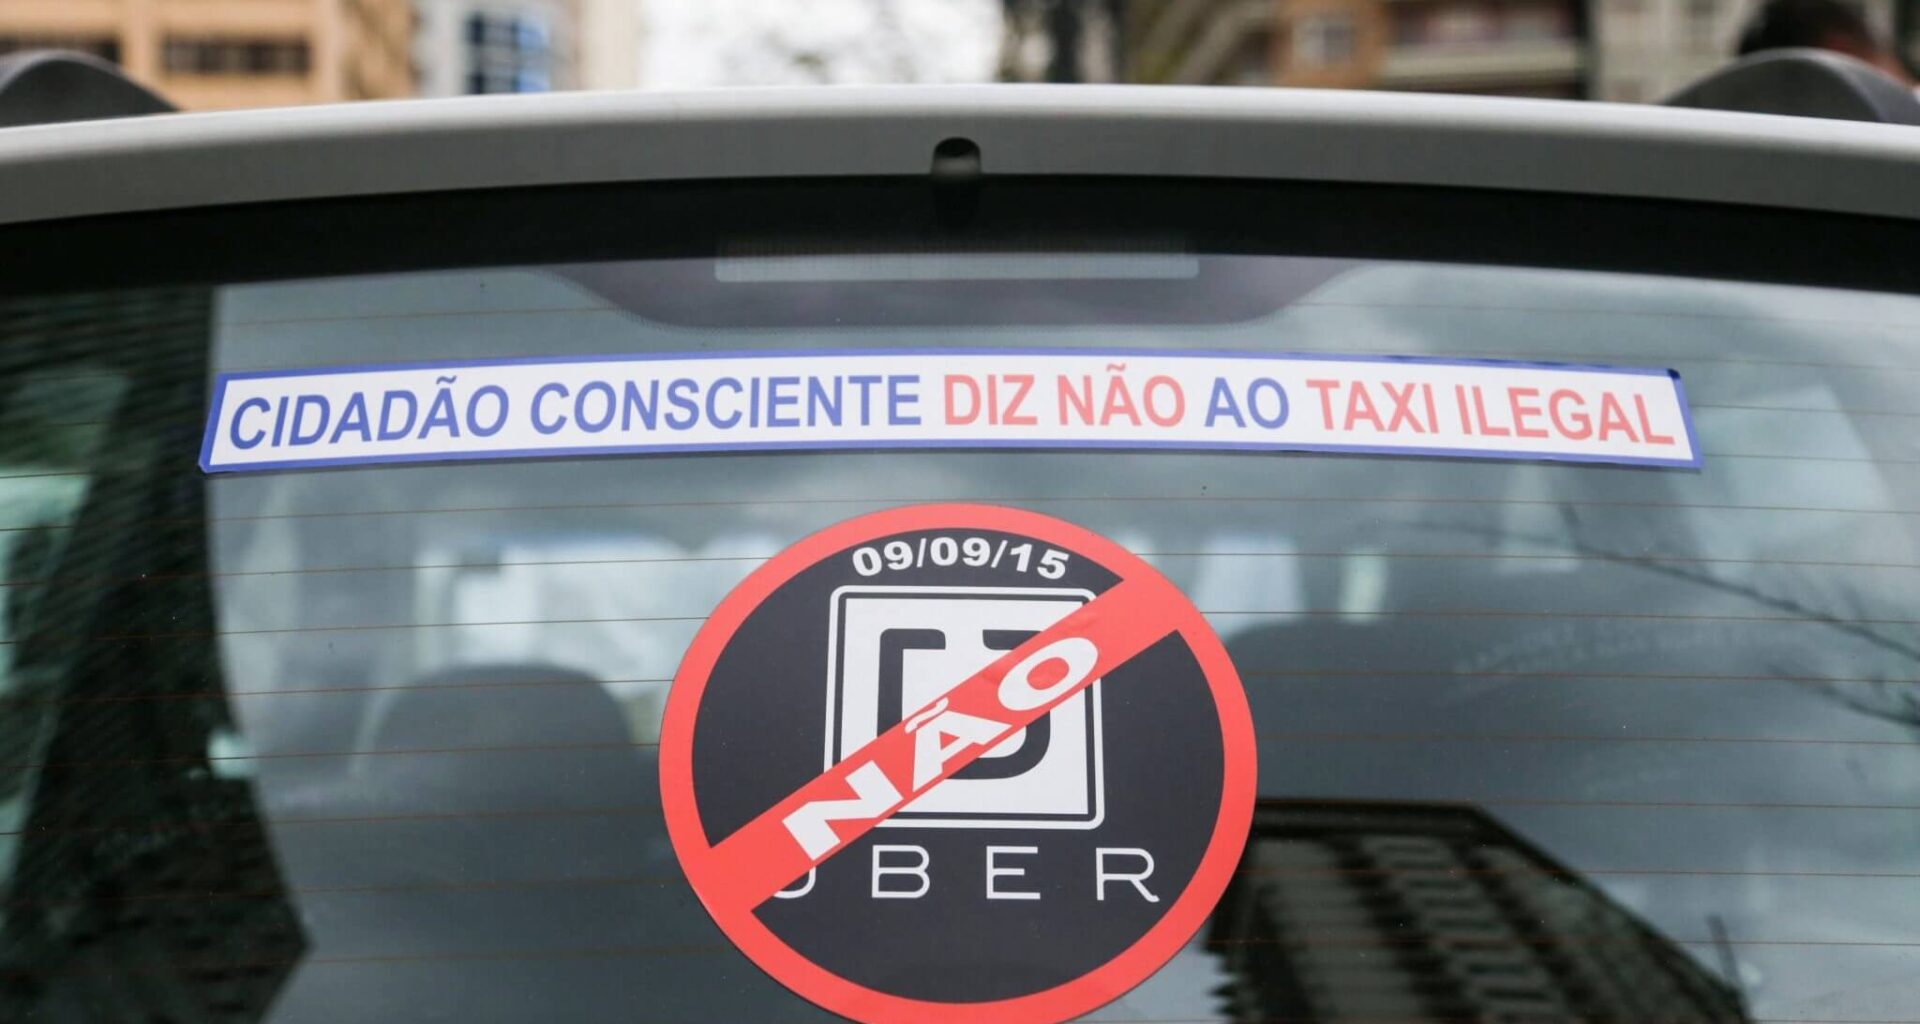 Pp protesto taxistas durante votacao do uber 090920150009